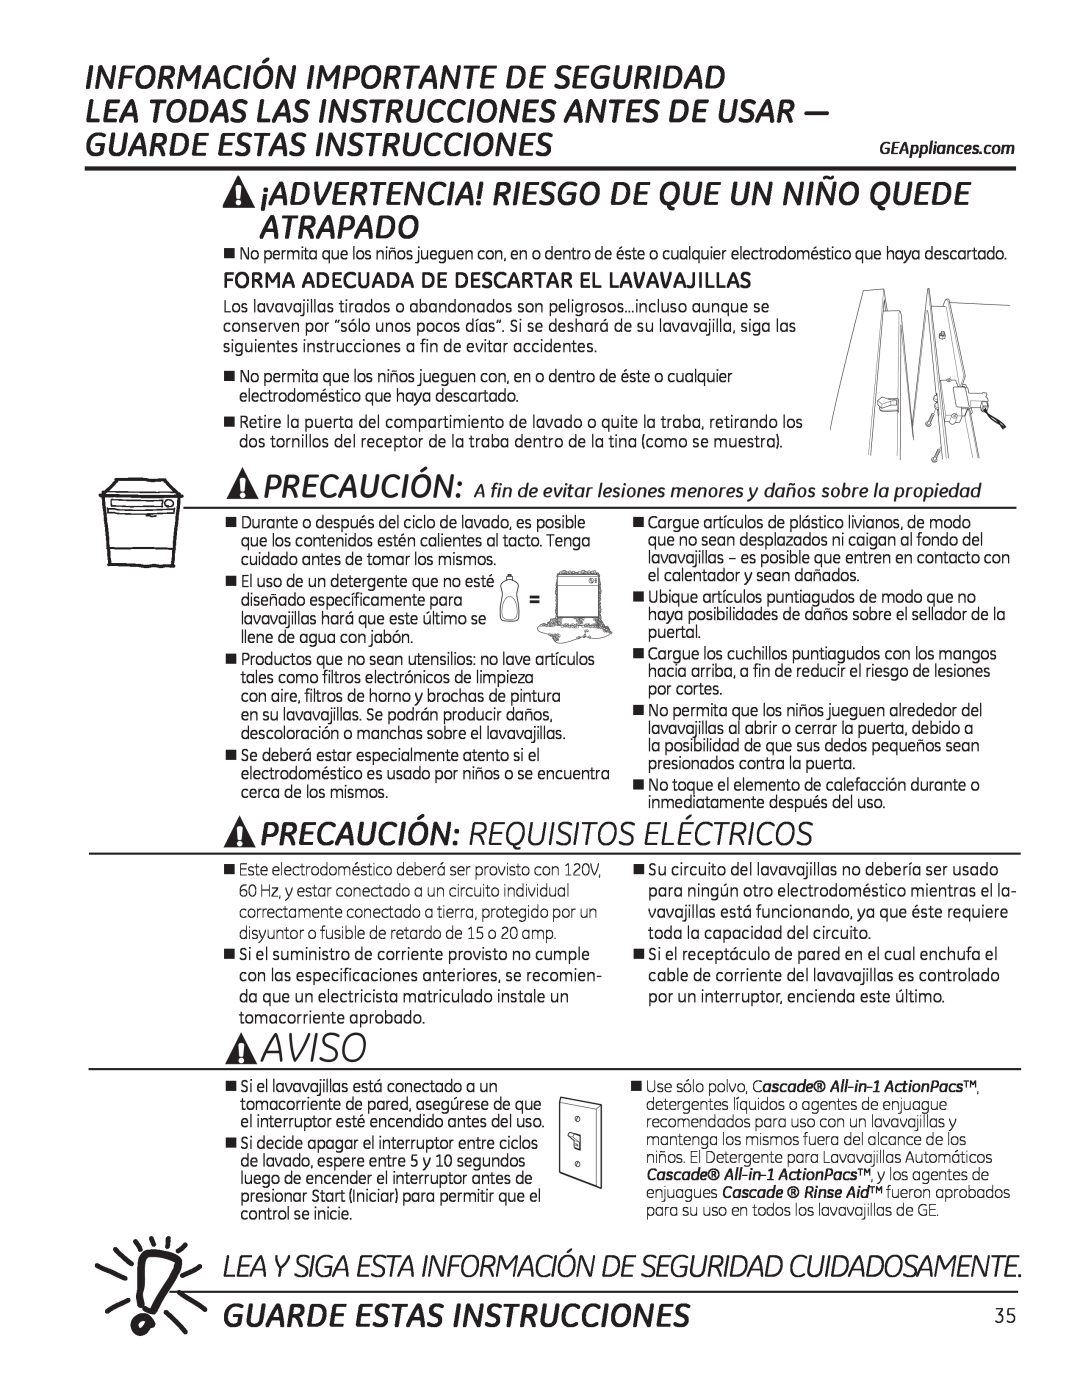 GE ADT520 Guarde Estas Instrucciones, Precaución: Requisitos Eléctricos, Forma Adecuada De Descartar El Lavavajillas 